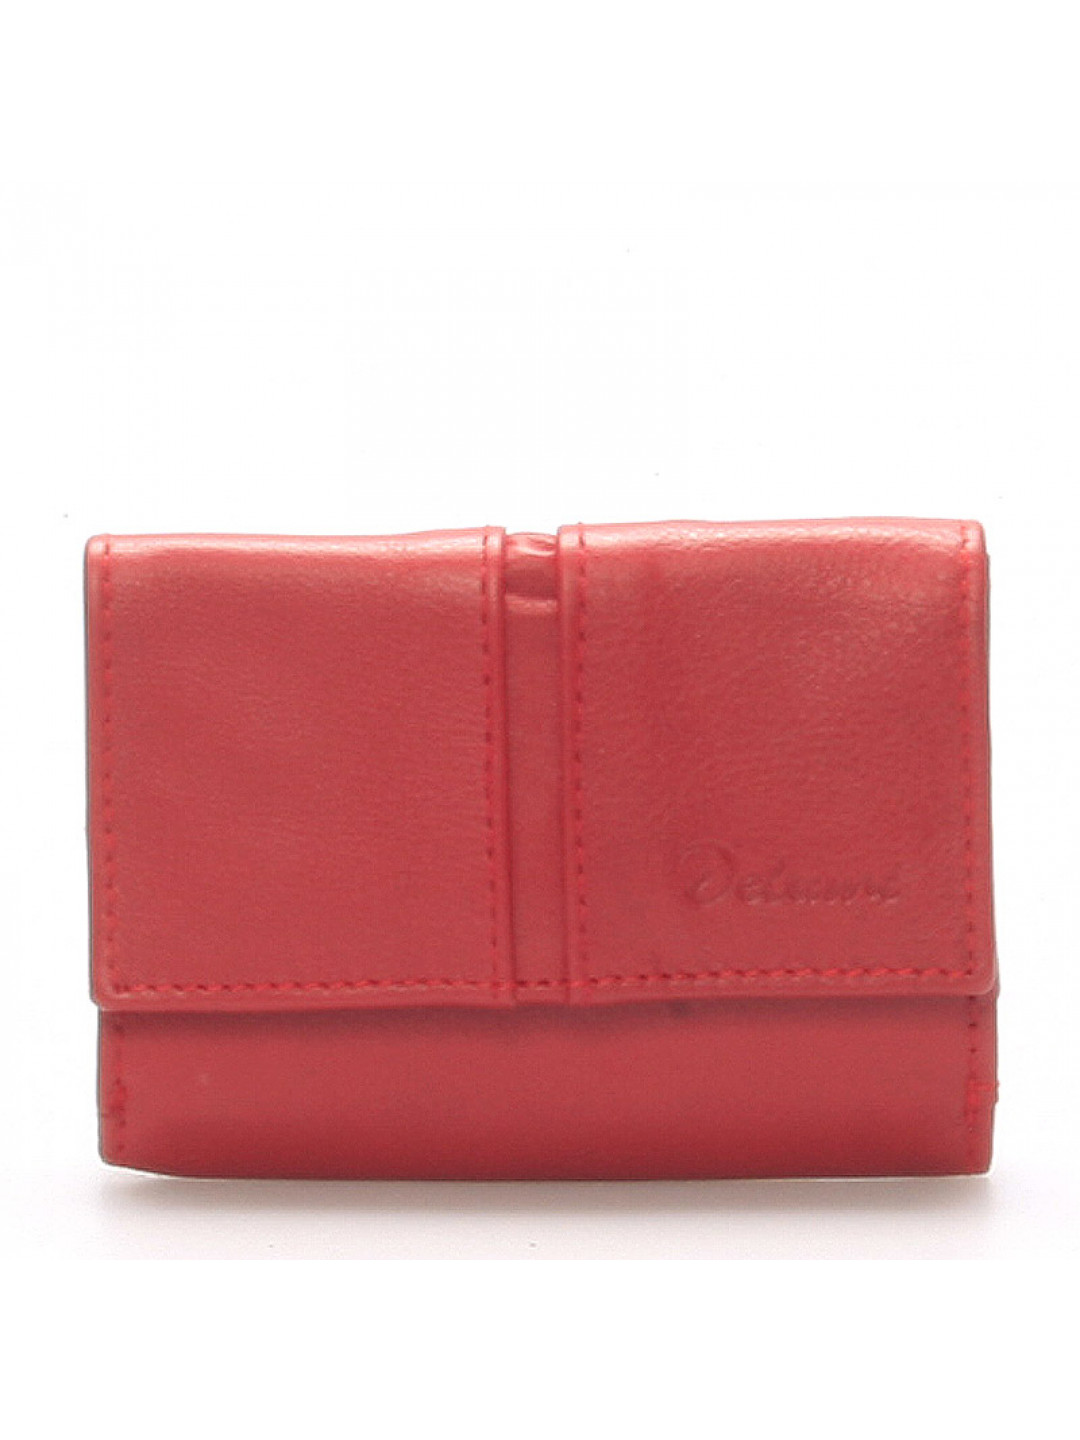 Kožená červená peněženka – Delami 9386